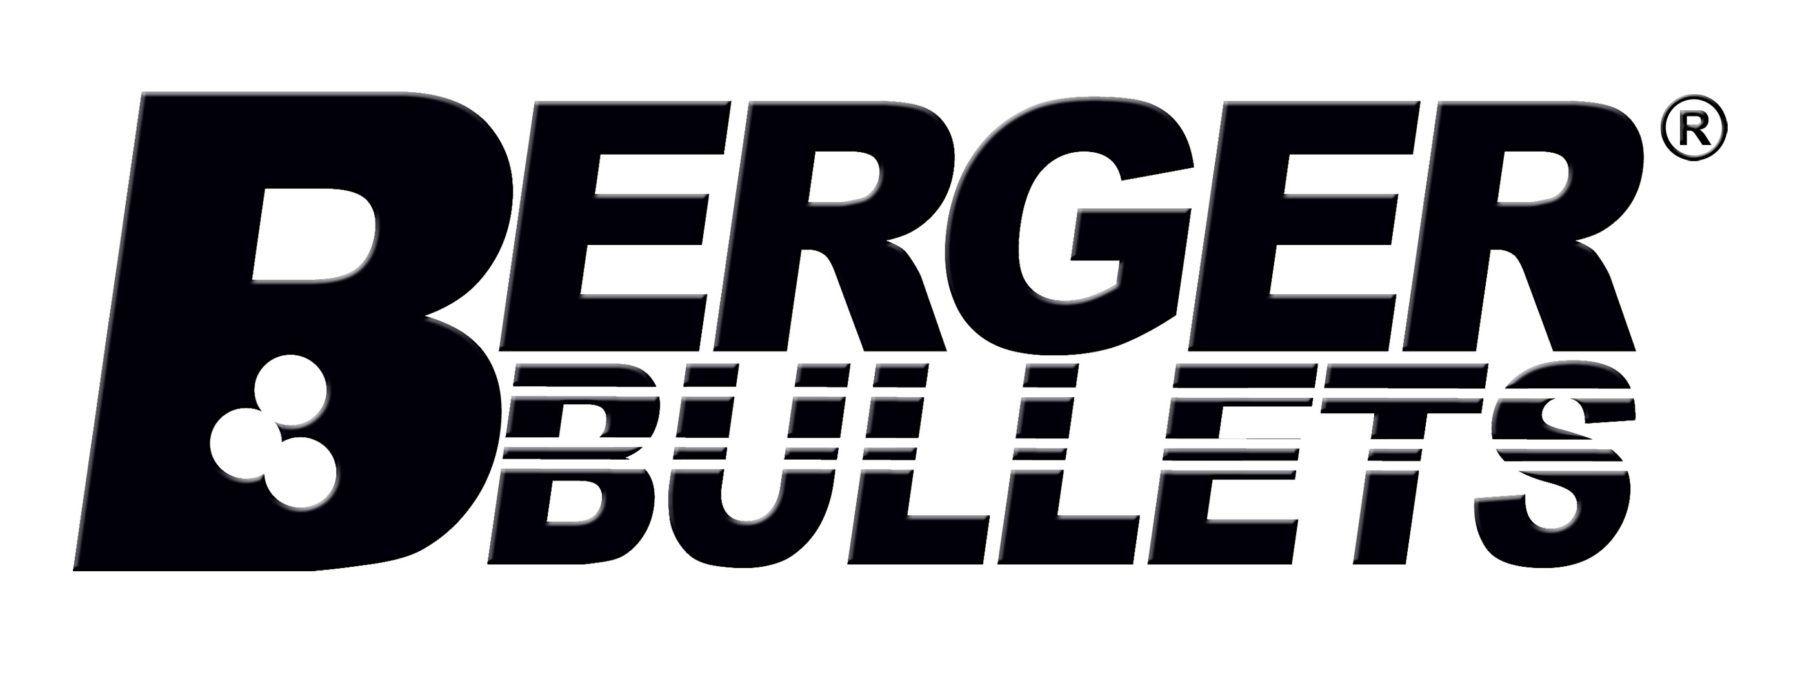 Berger Logo - registered logo – Berger Bullets